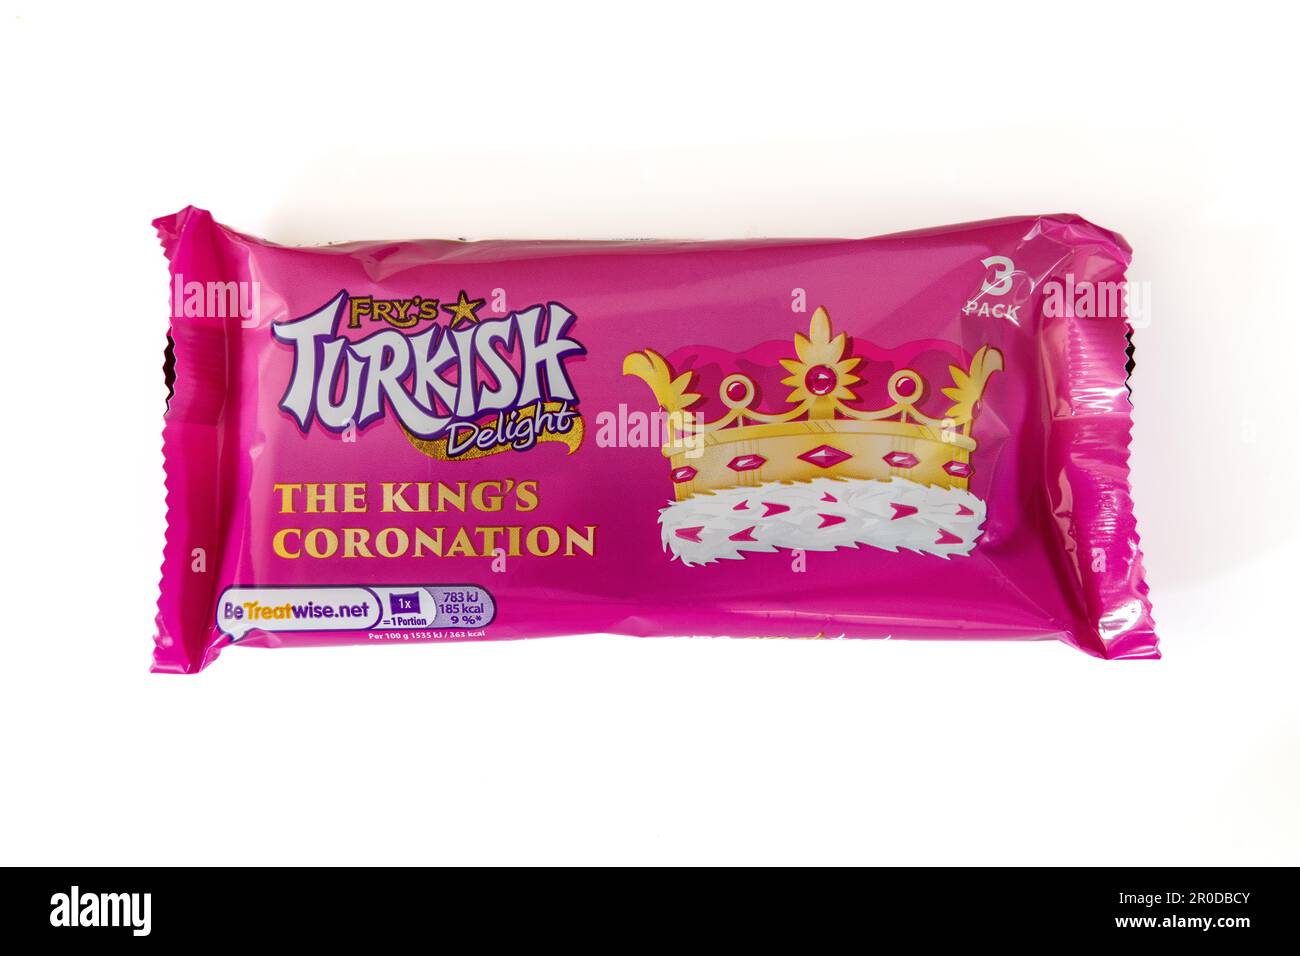 Emballage King's Coronation édition limitée de Fry's Turque Delight Banque D'Images